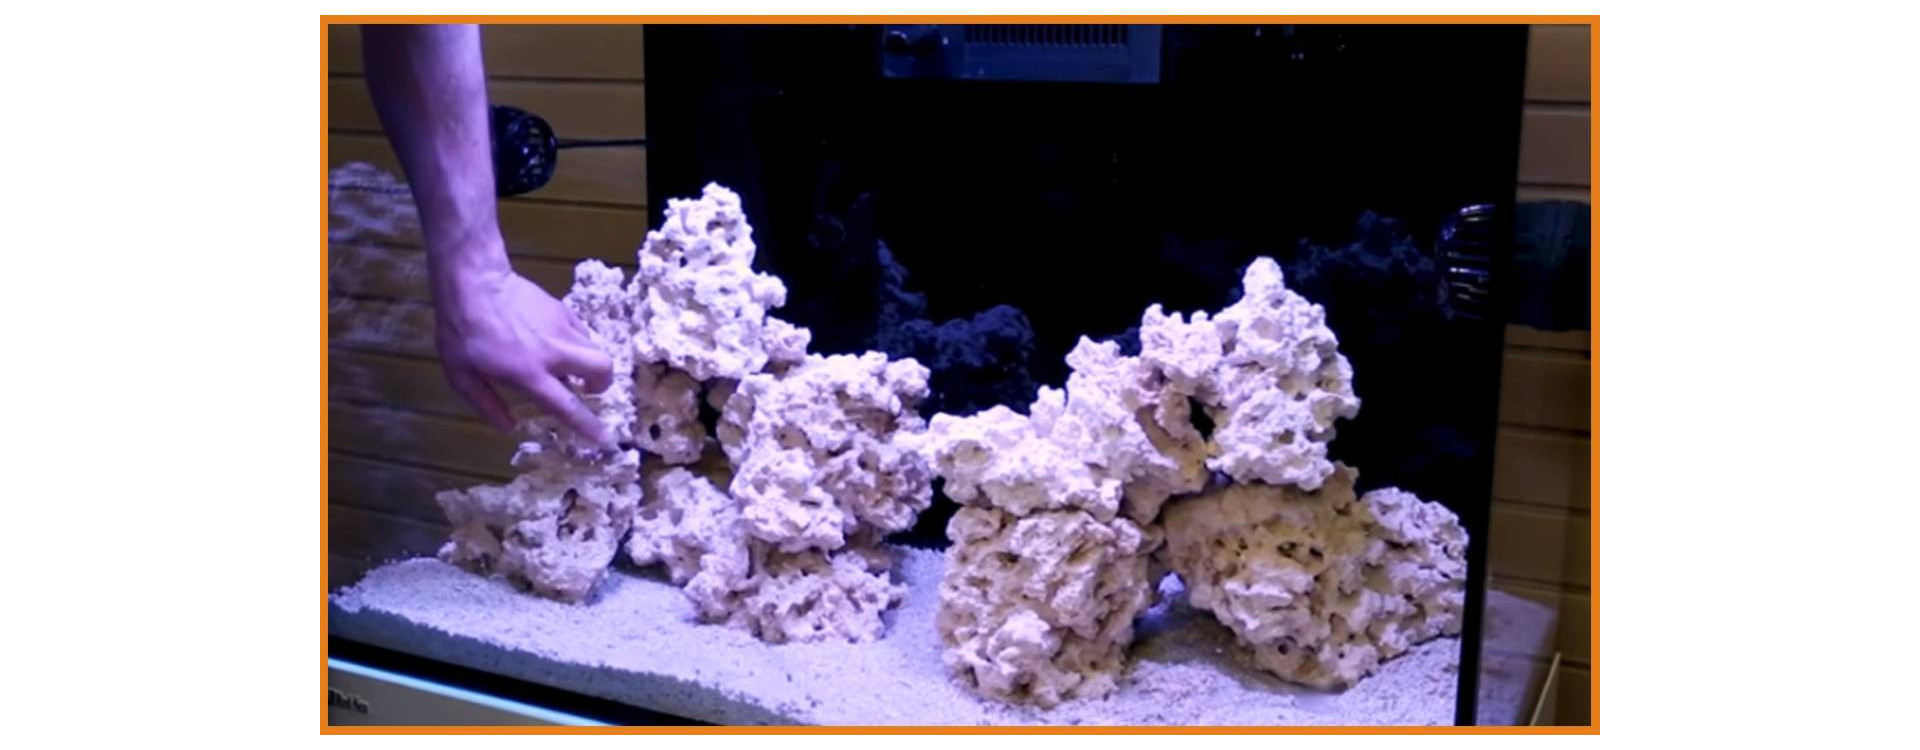 Importance of Decor in a Reef Aquarium